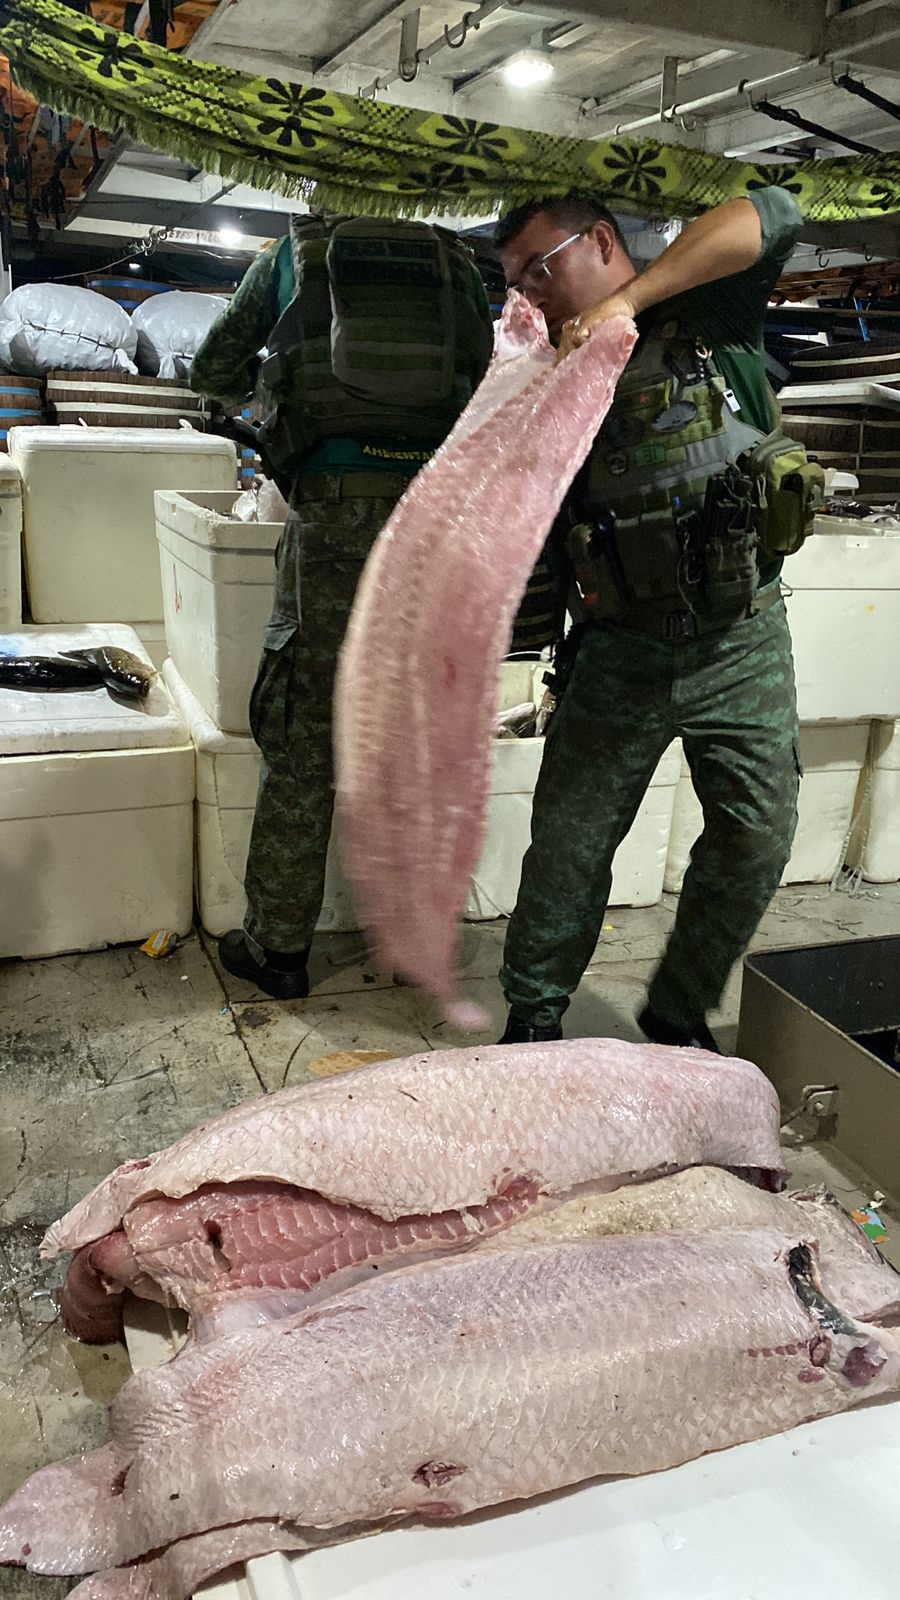 Cerca de 1,5 tonelada de pescado ilegal é apreendida em embarcação no AM